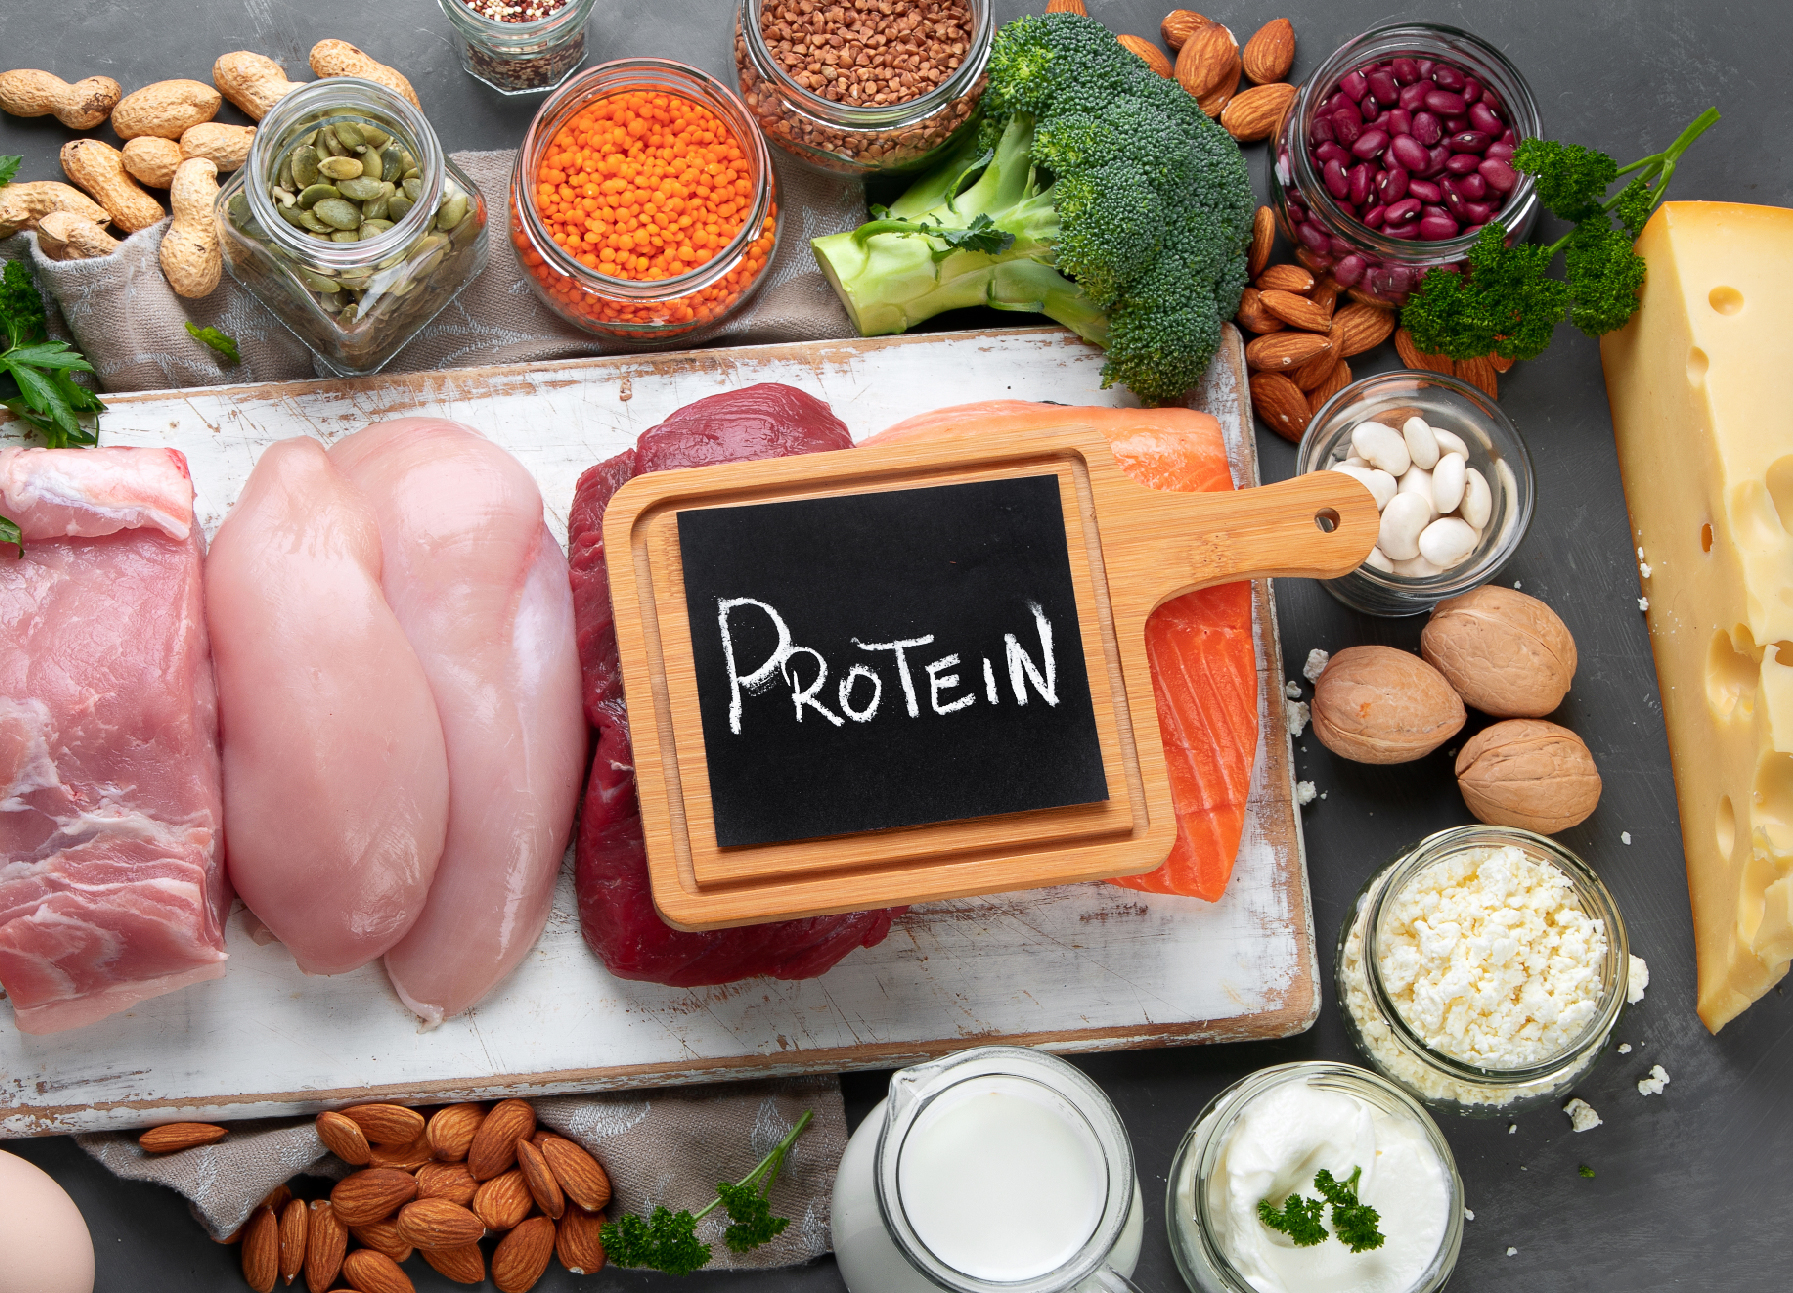 بروتينات عالية الجودة يمكن تناولها يوميا